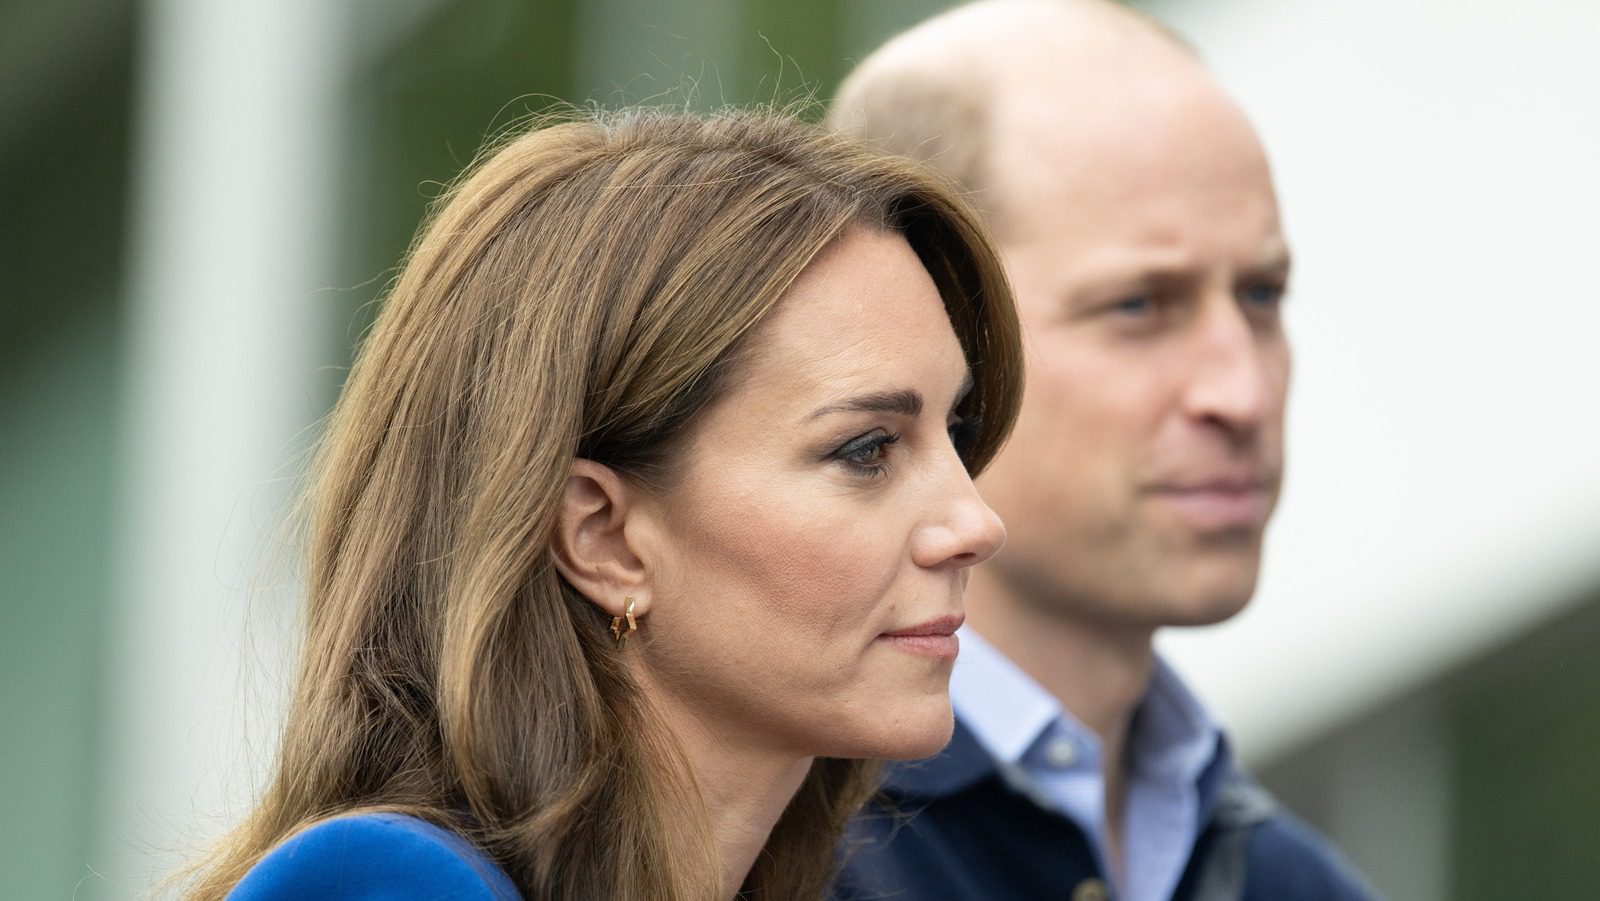 Le Retraitement Suspicionneux de Kate Middleton et Le Retour Public